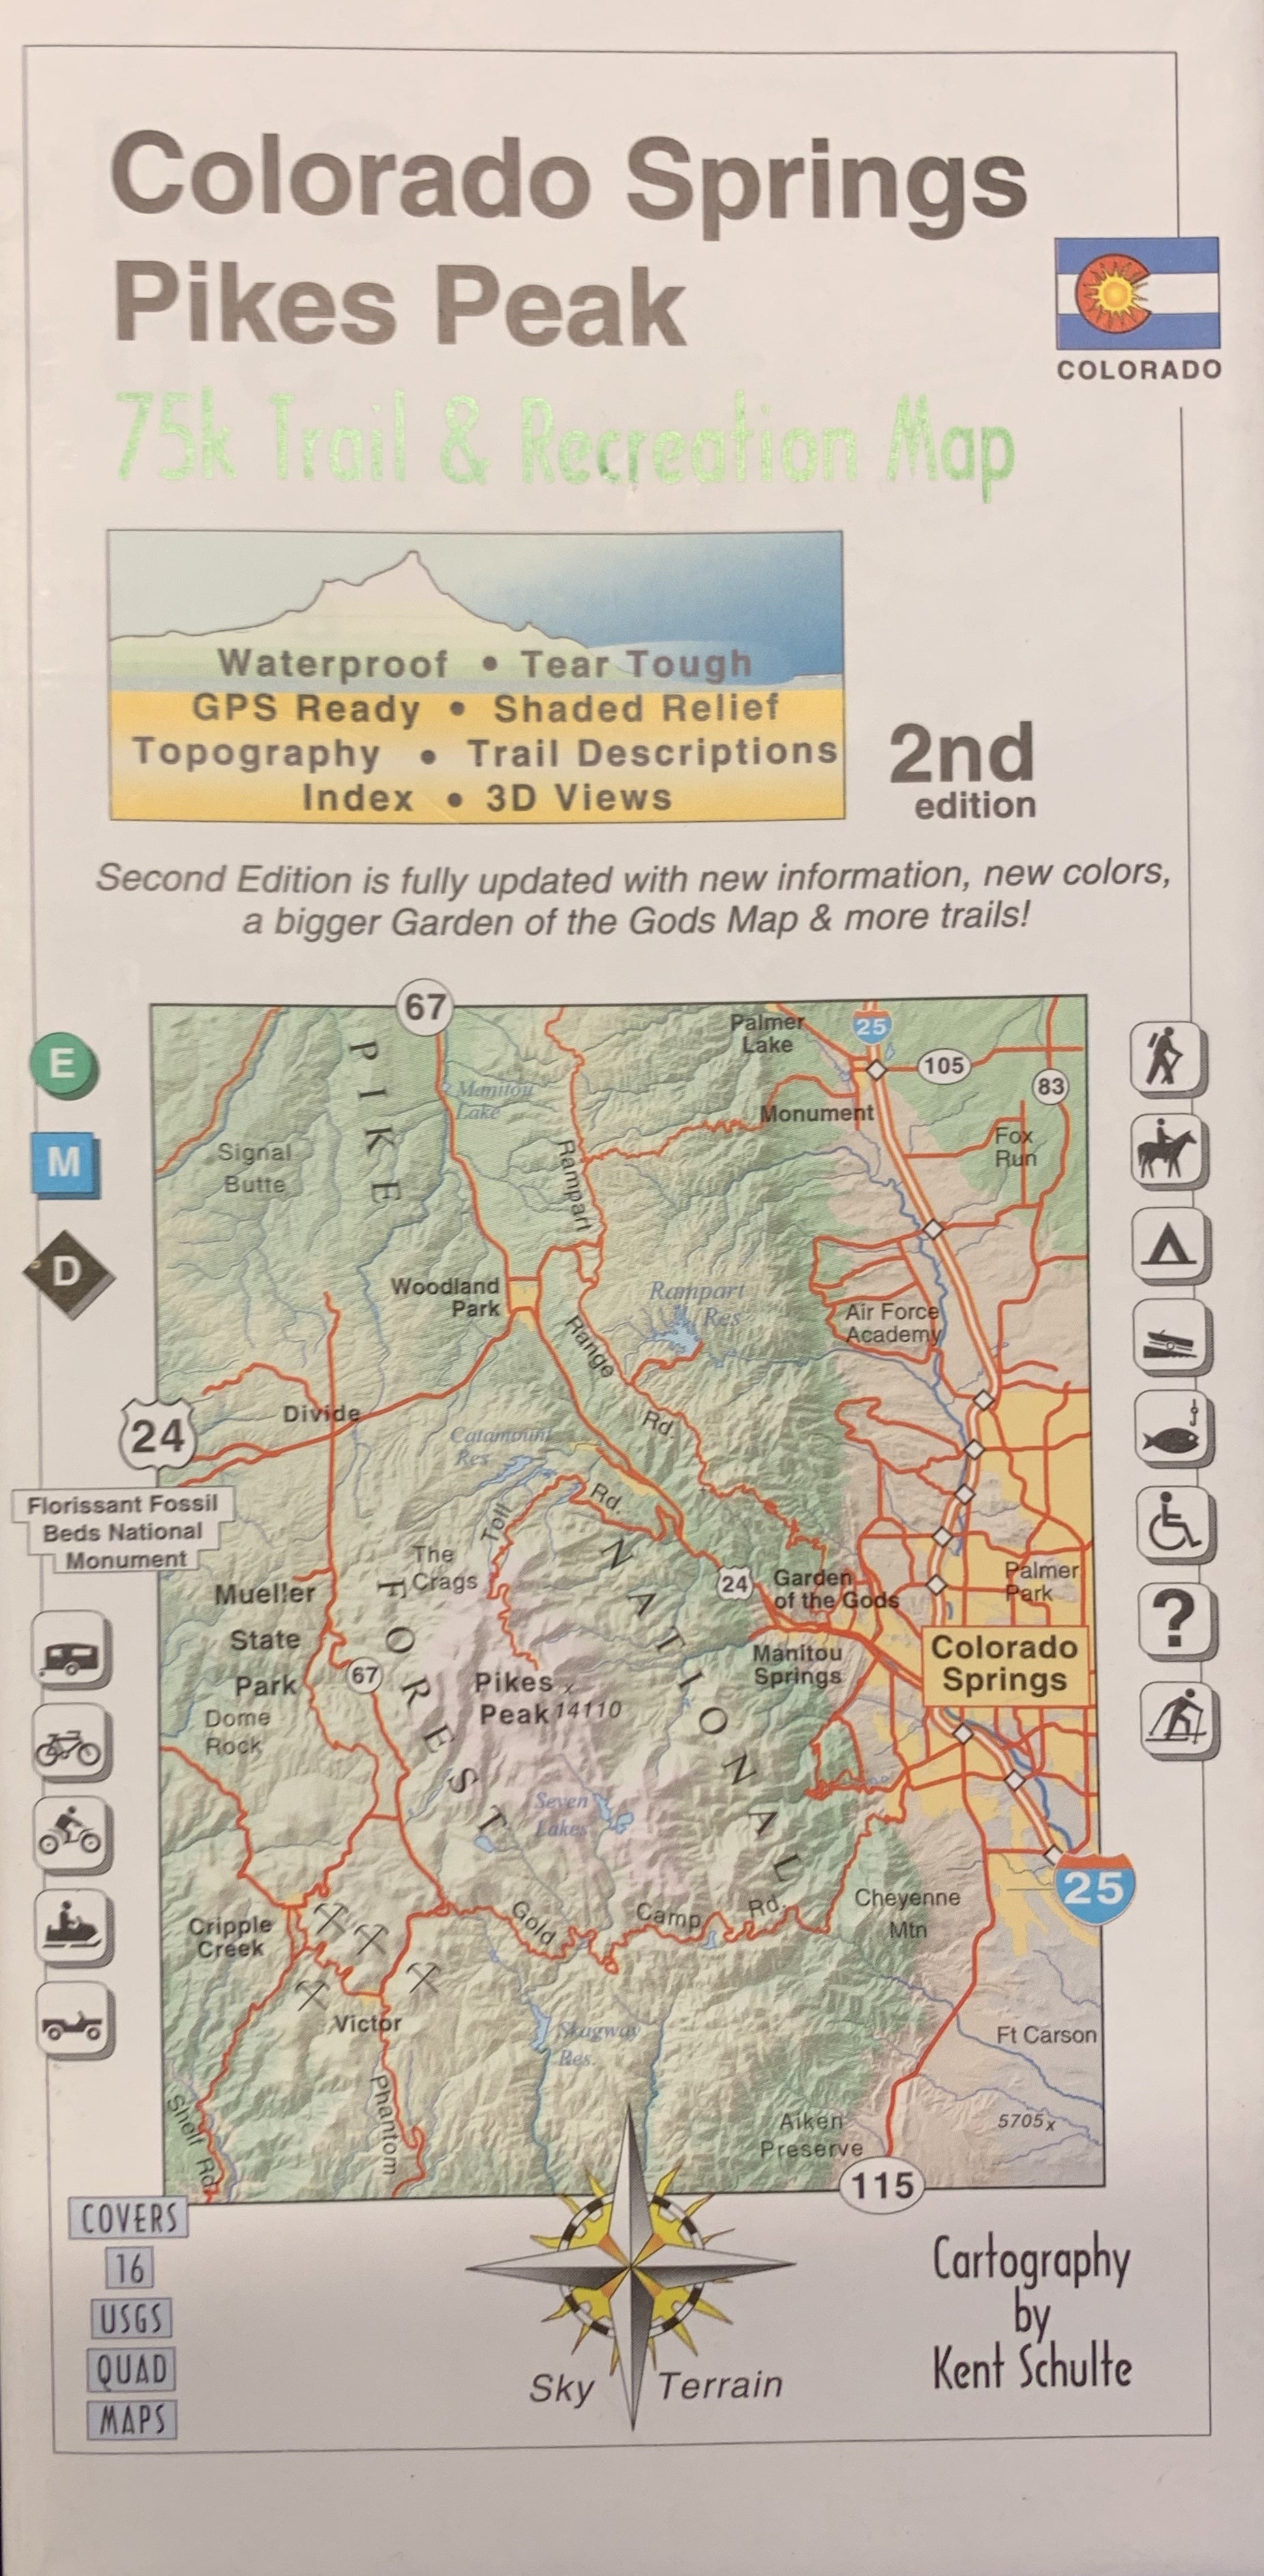 Colorado Springs/Pikes Peak Hiking Map